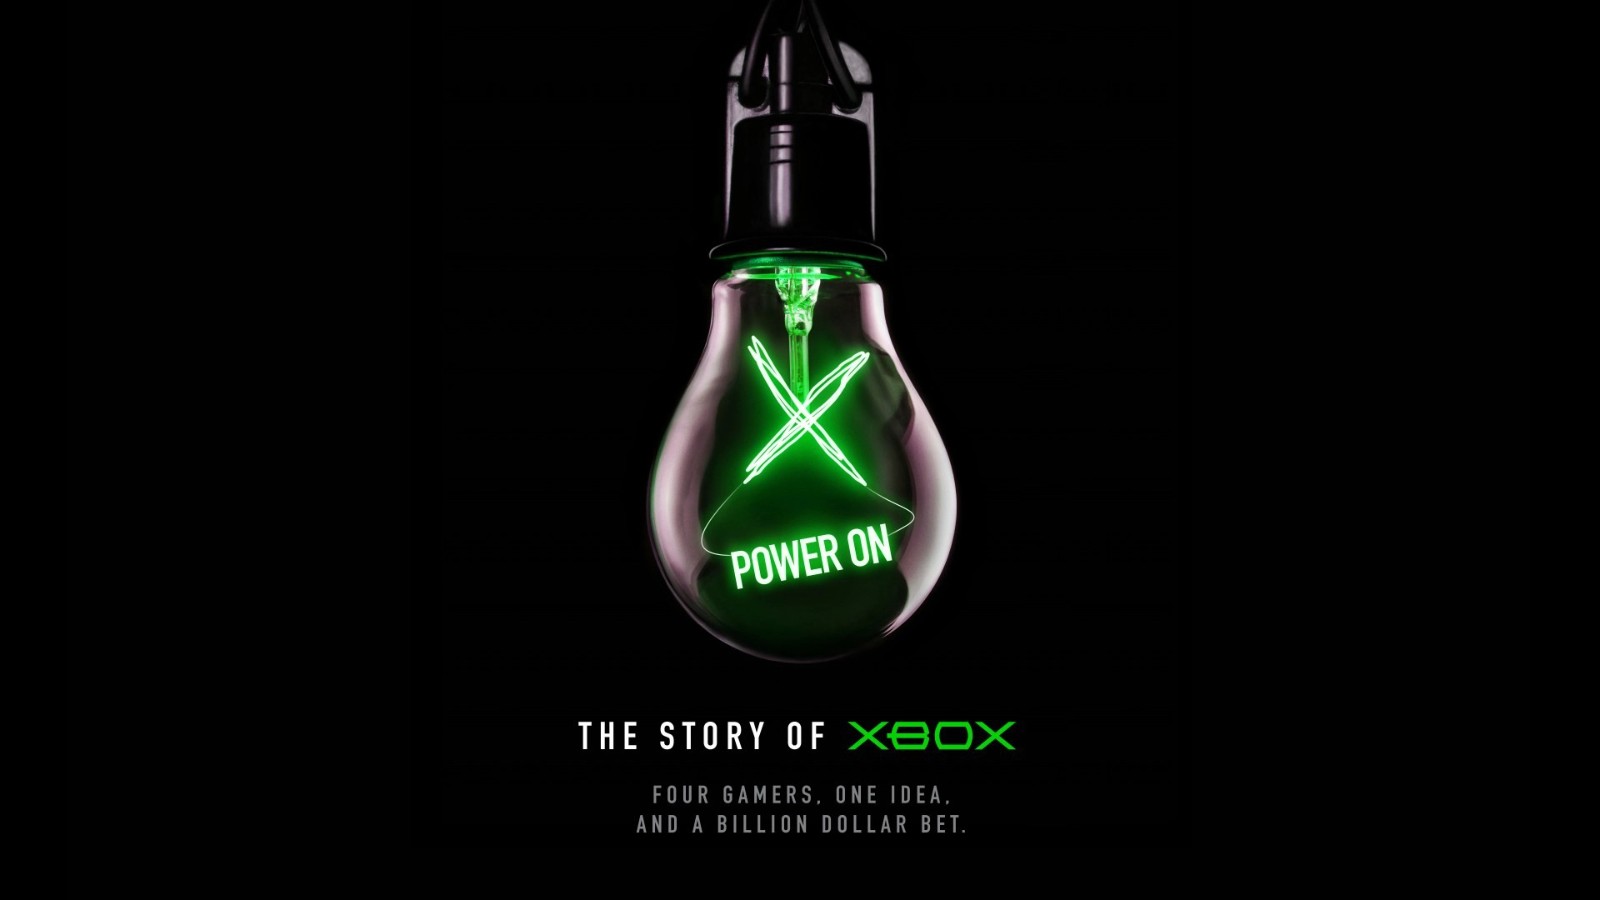 微软公布四小时时长Xbox官方历史纪录片